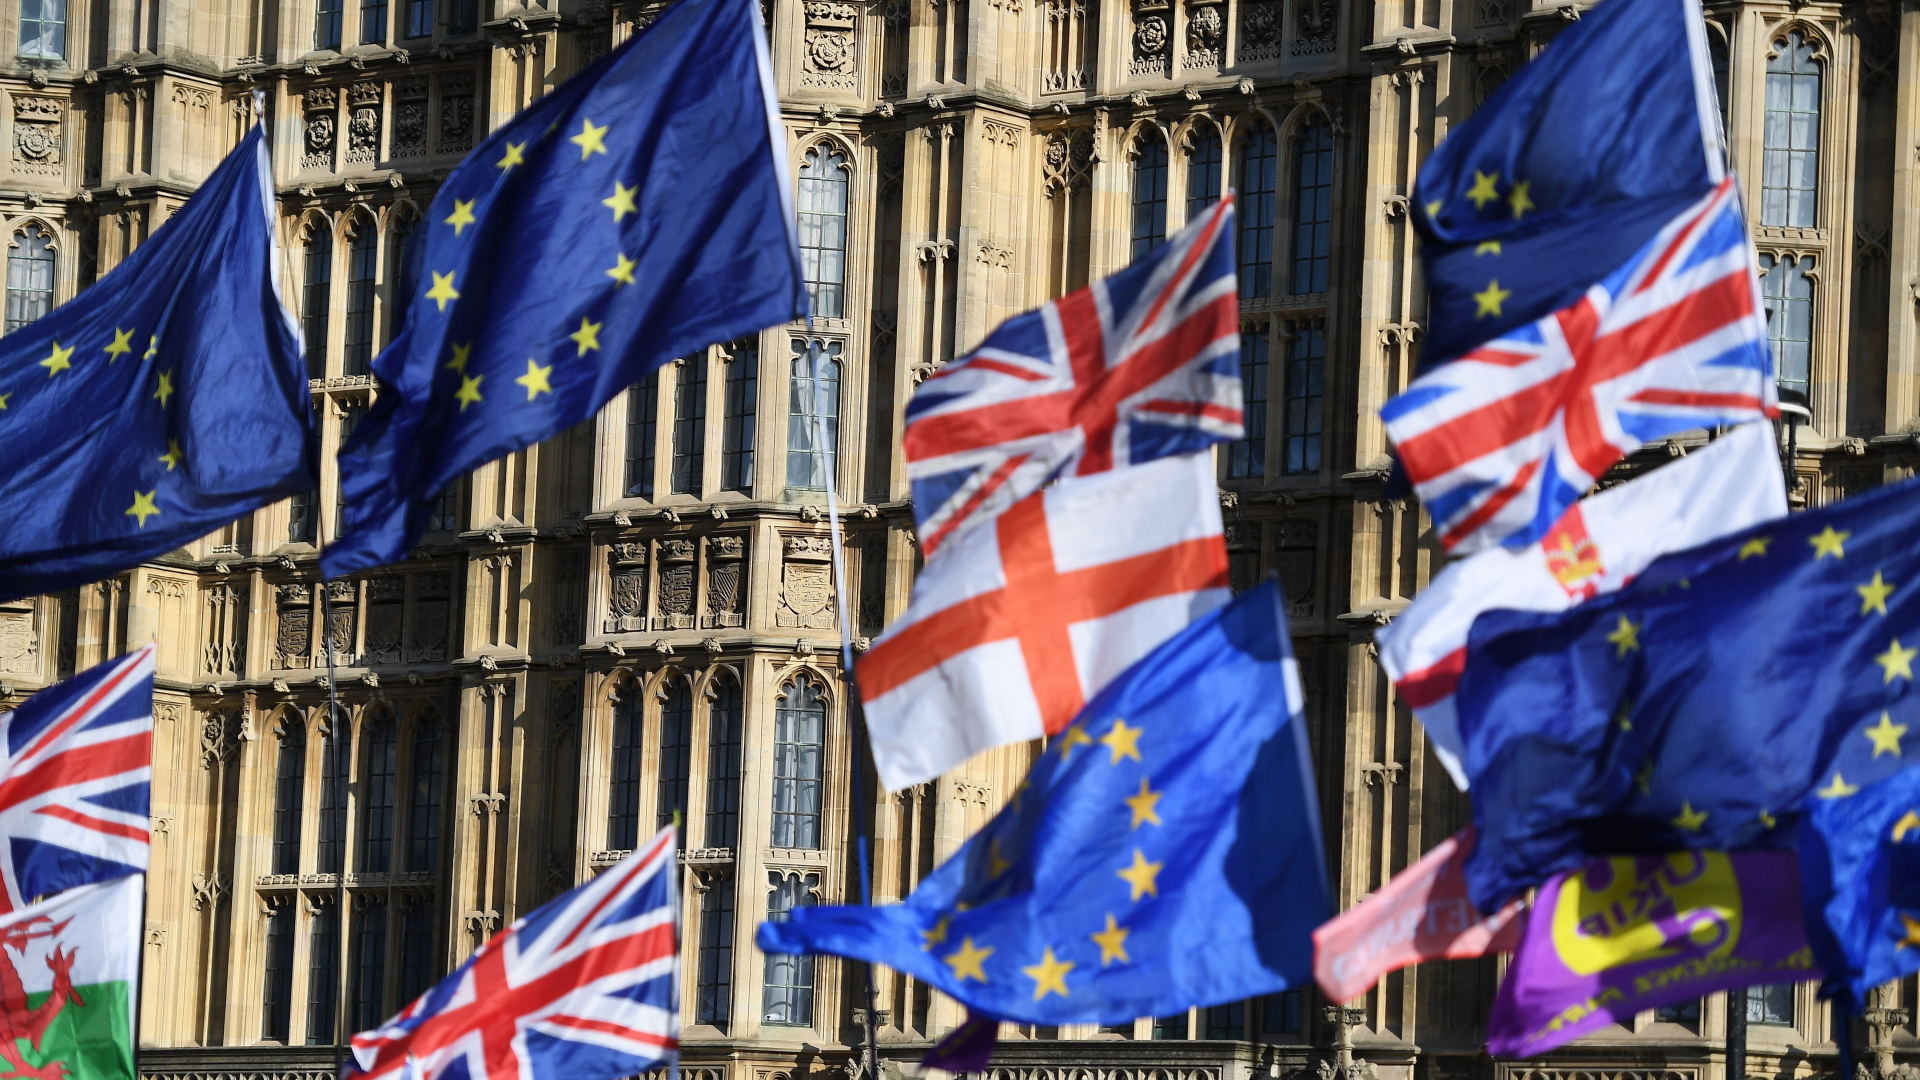 Europaflaggen und Union Jacks bei Protesten vor dem britischen Parlament in London. | ANDY RAIN/EPA-EFE/REX